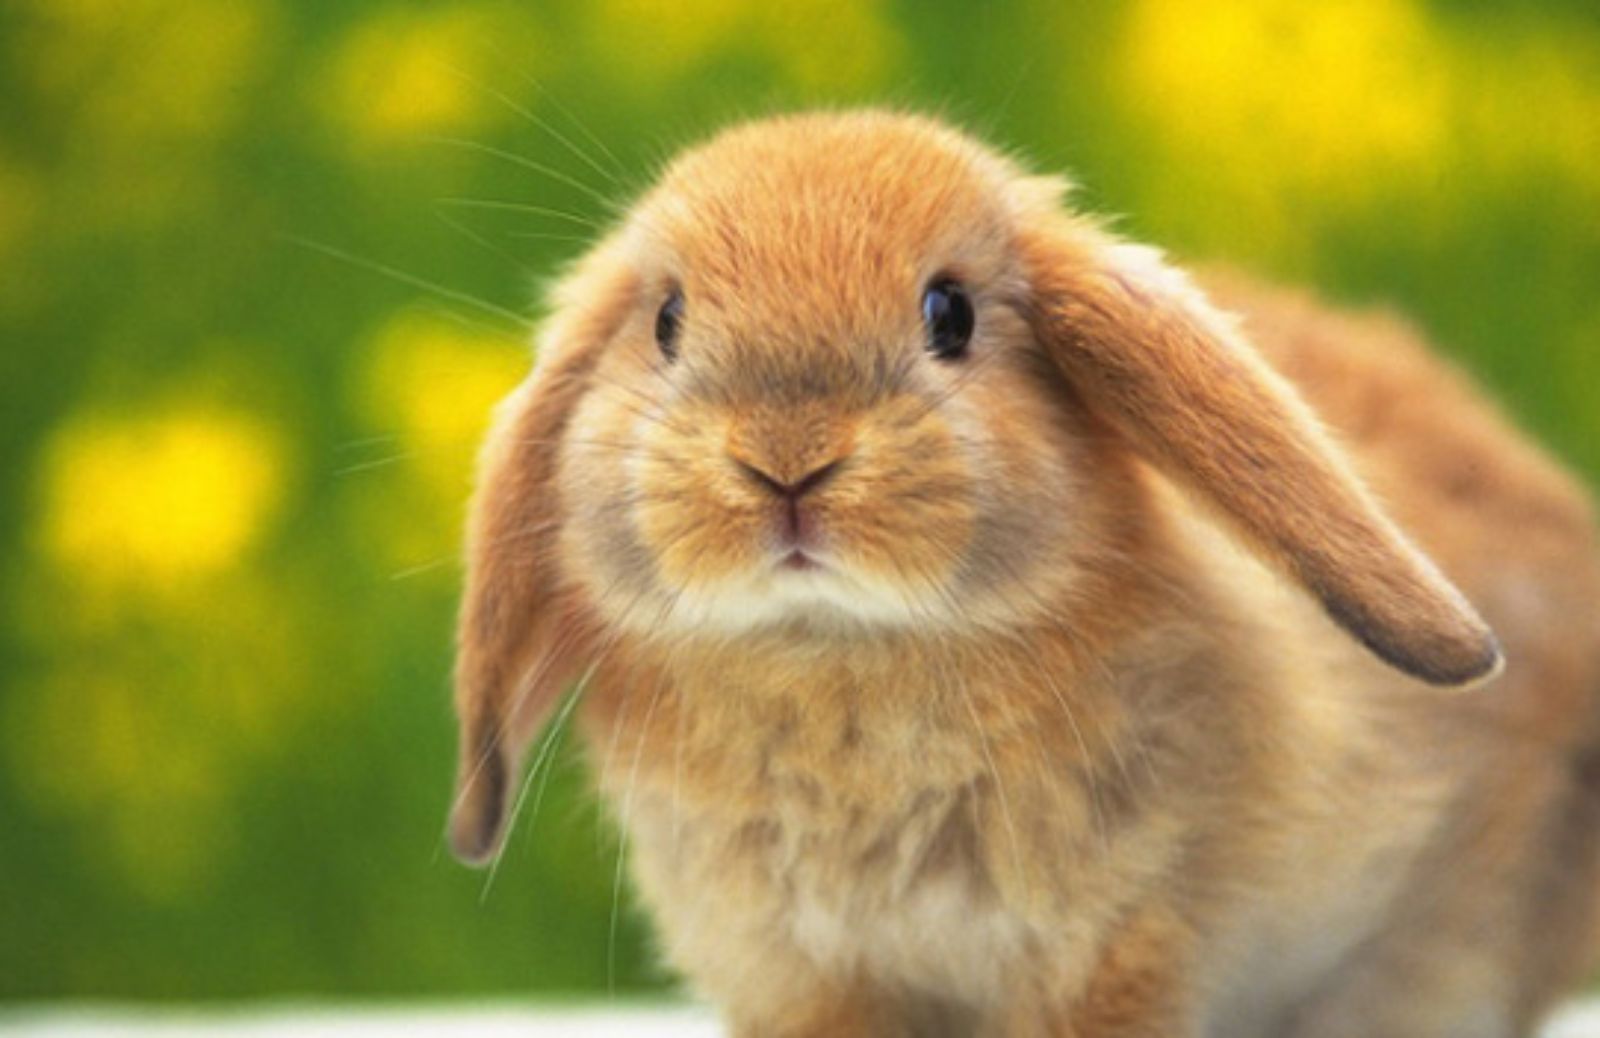 I 5 consigli per far viaggiare al sicuro il tuo coniglio